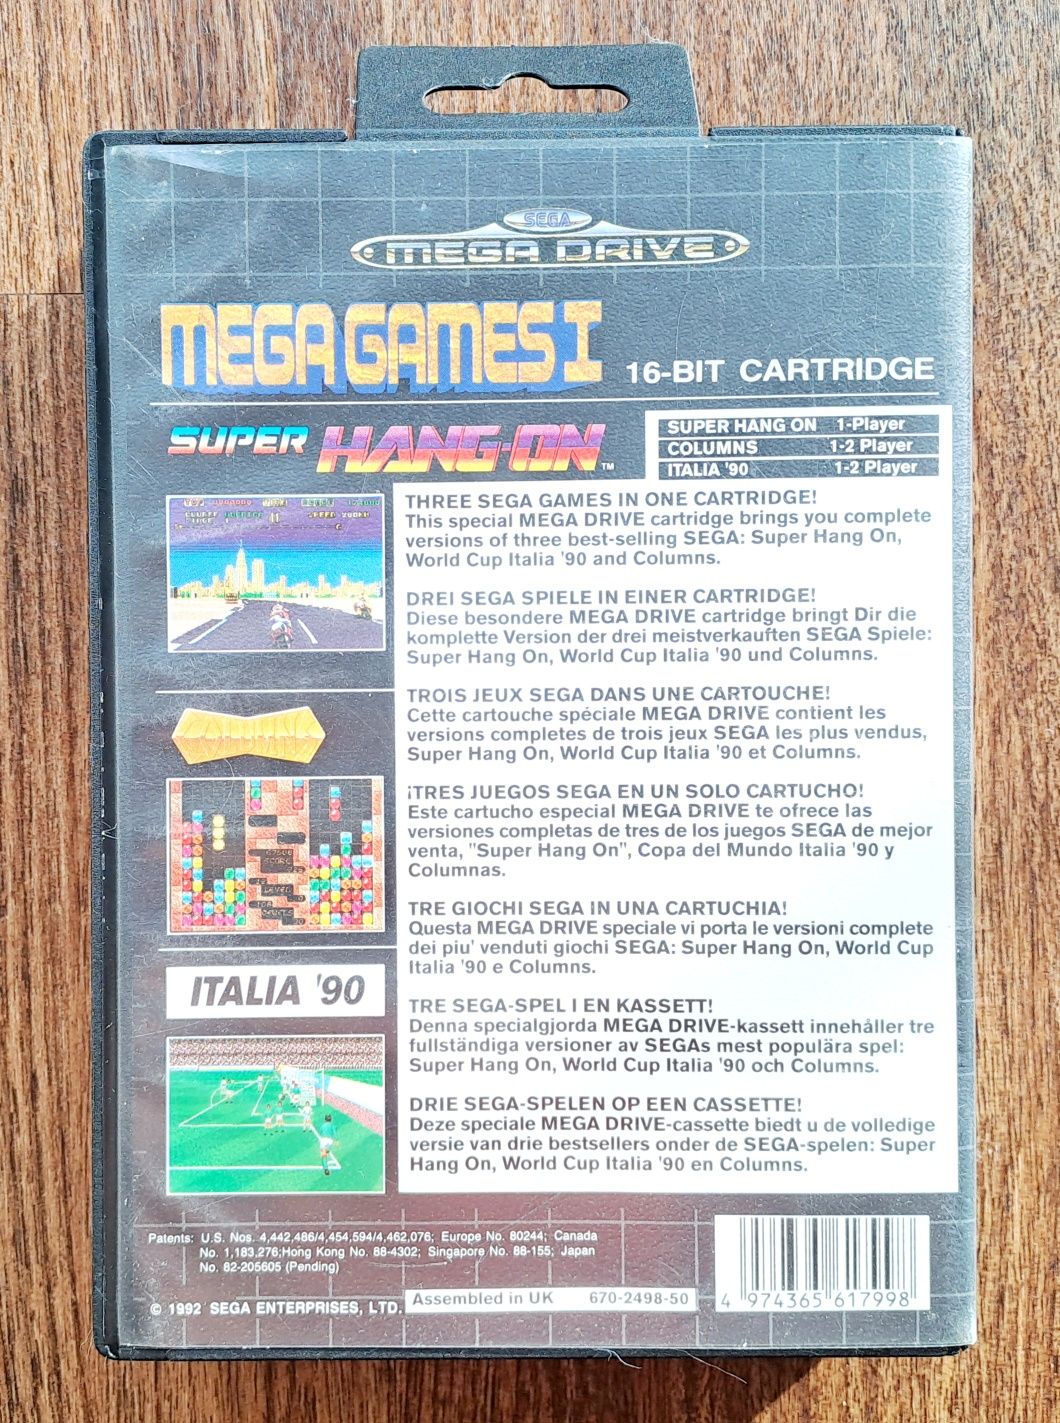 Caixa com cartucho 3 jogos consola Sega Mega Drive, Mega Games I